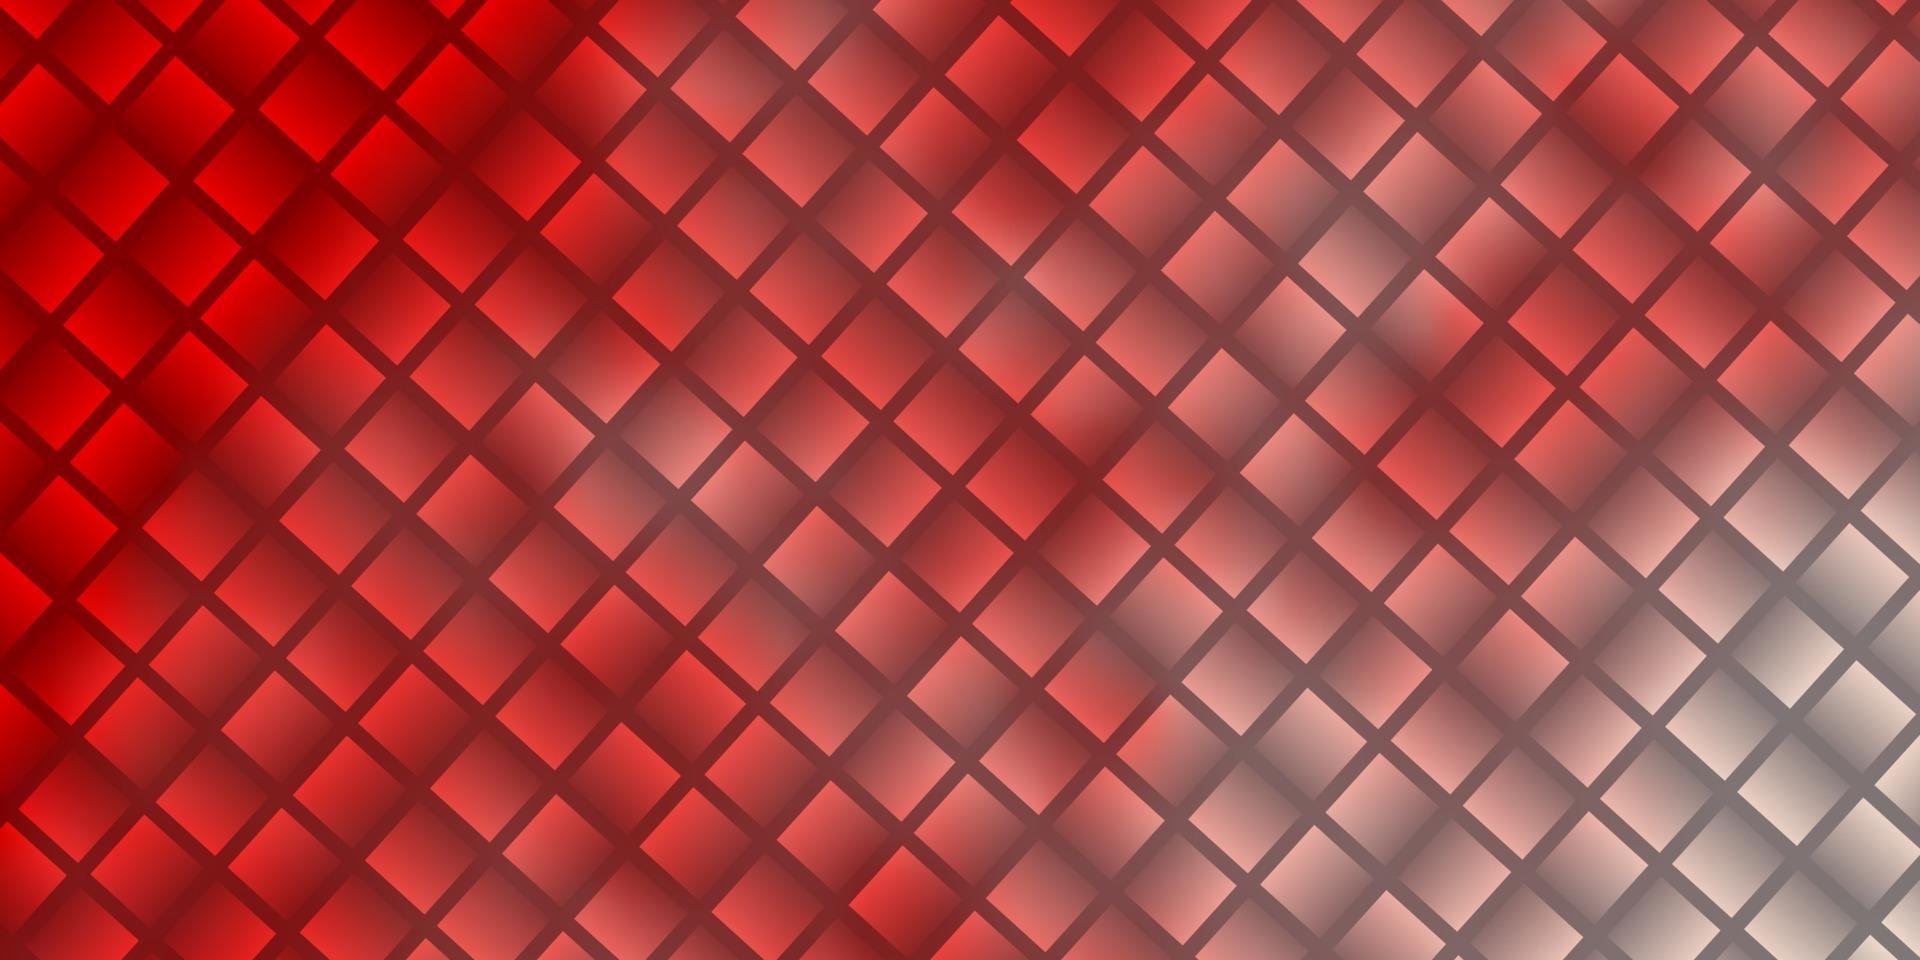 fundo vector vermelho claro com retângulos.